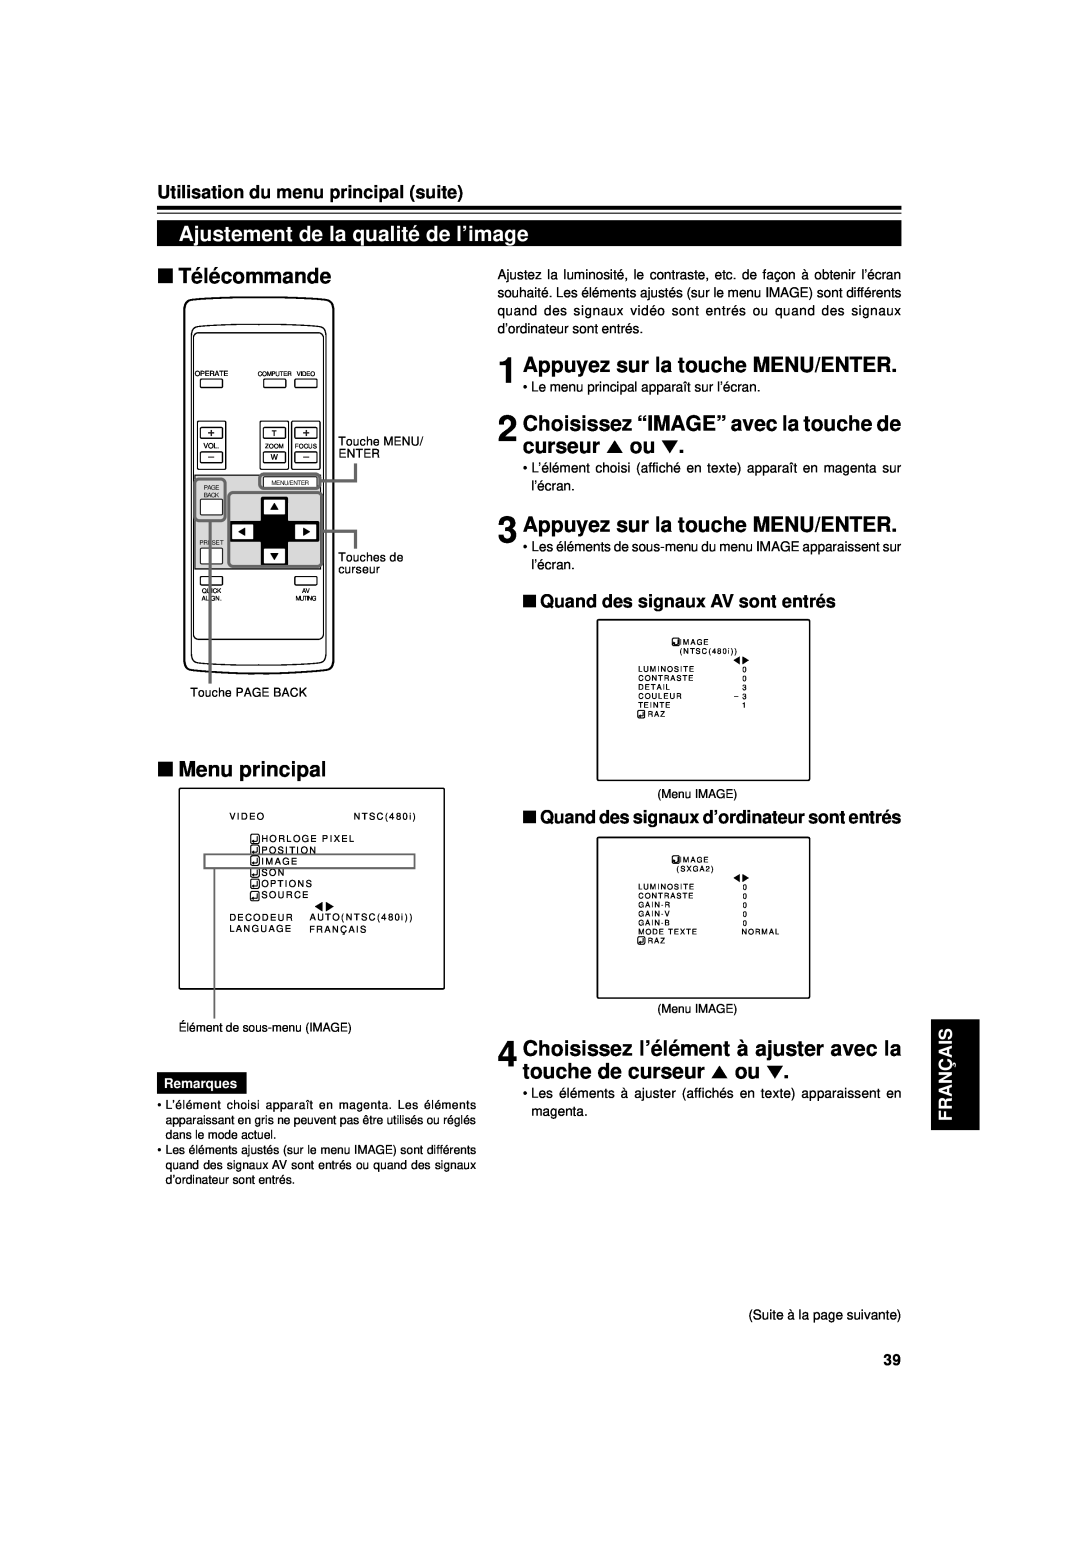 JVC DLA-G15U manual Ajustement de la qualité de l’image, Choisissez “IMAGE” avec la touche de curseur 5 ou, Télécommande 